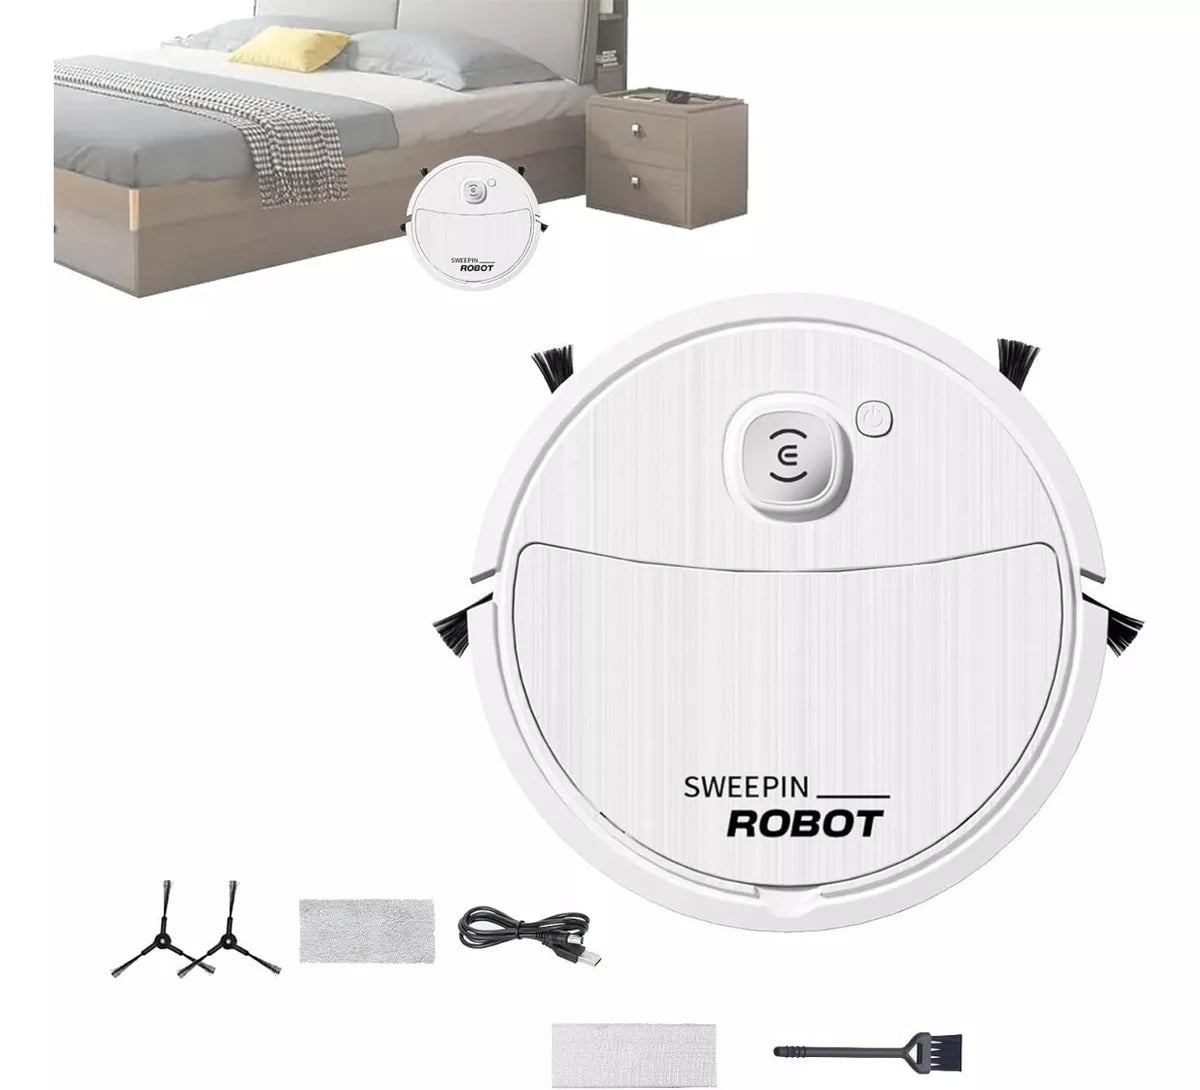 Aspiradora Robot - solución para mantener tus espacios impecables sin esfuerzo